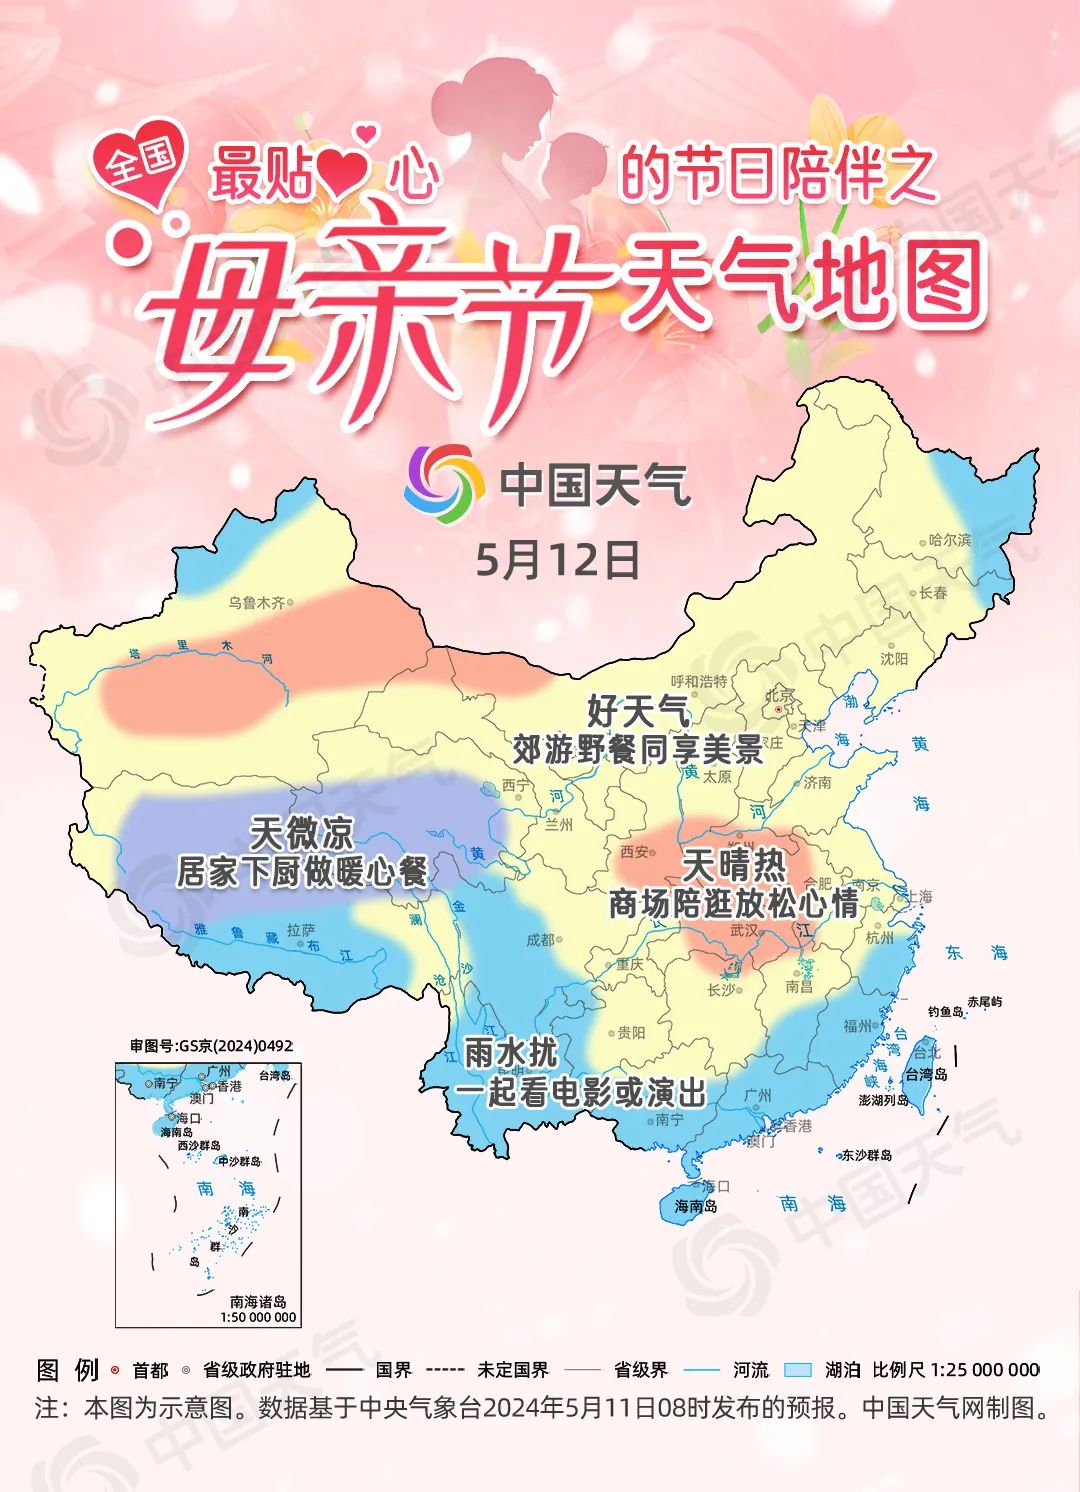 从中国天气网推出的母亲节全国天气地图来看,母亲节当天我国大部天气